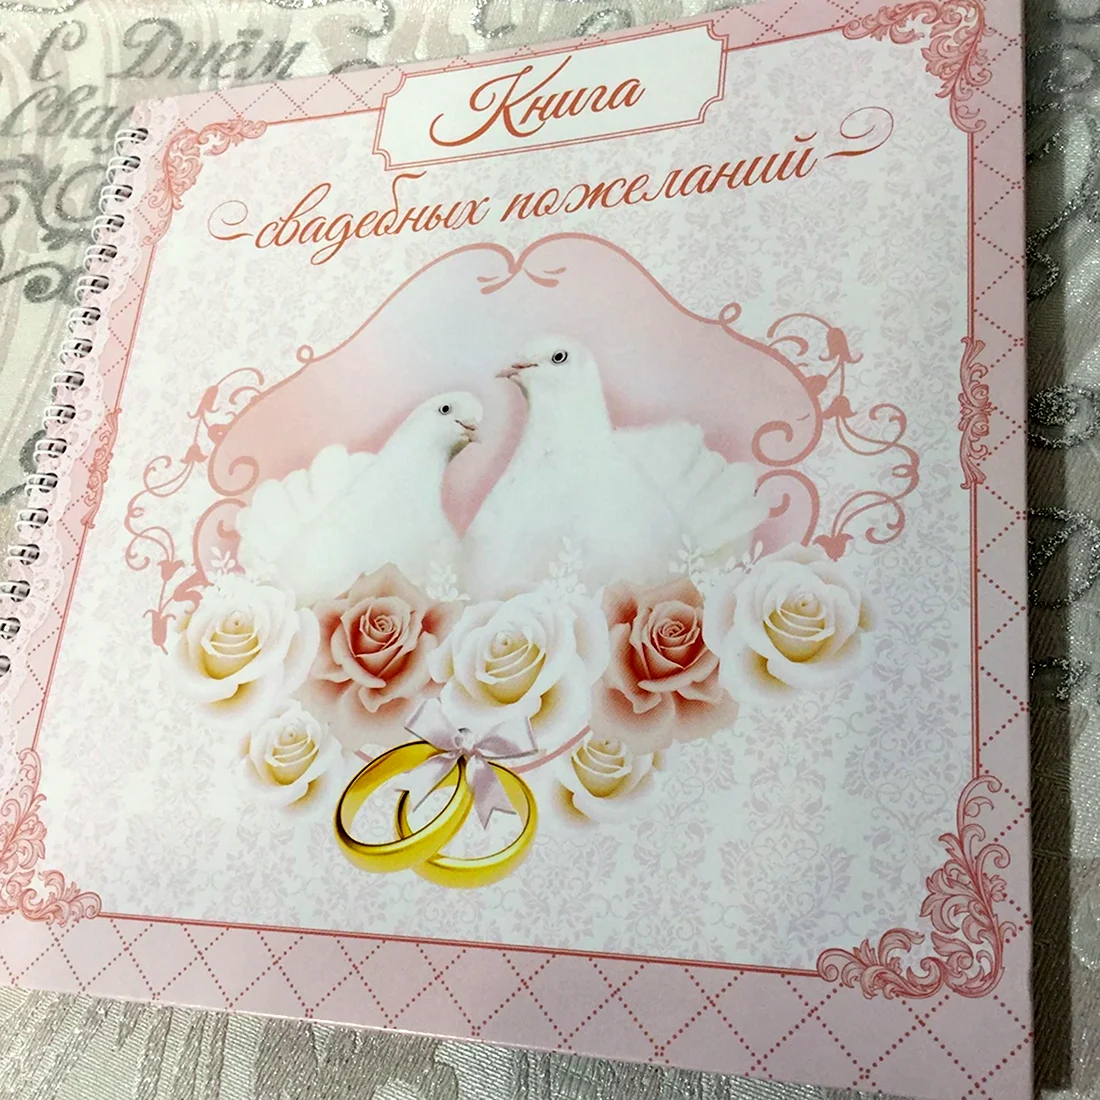 1 Месяц со дня свадьбы поздравления. Свадебная открытка